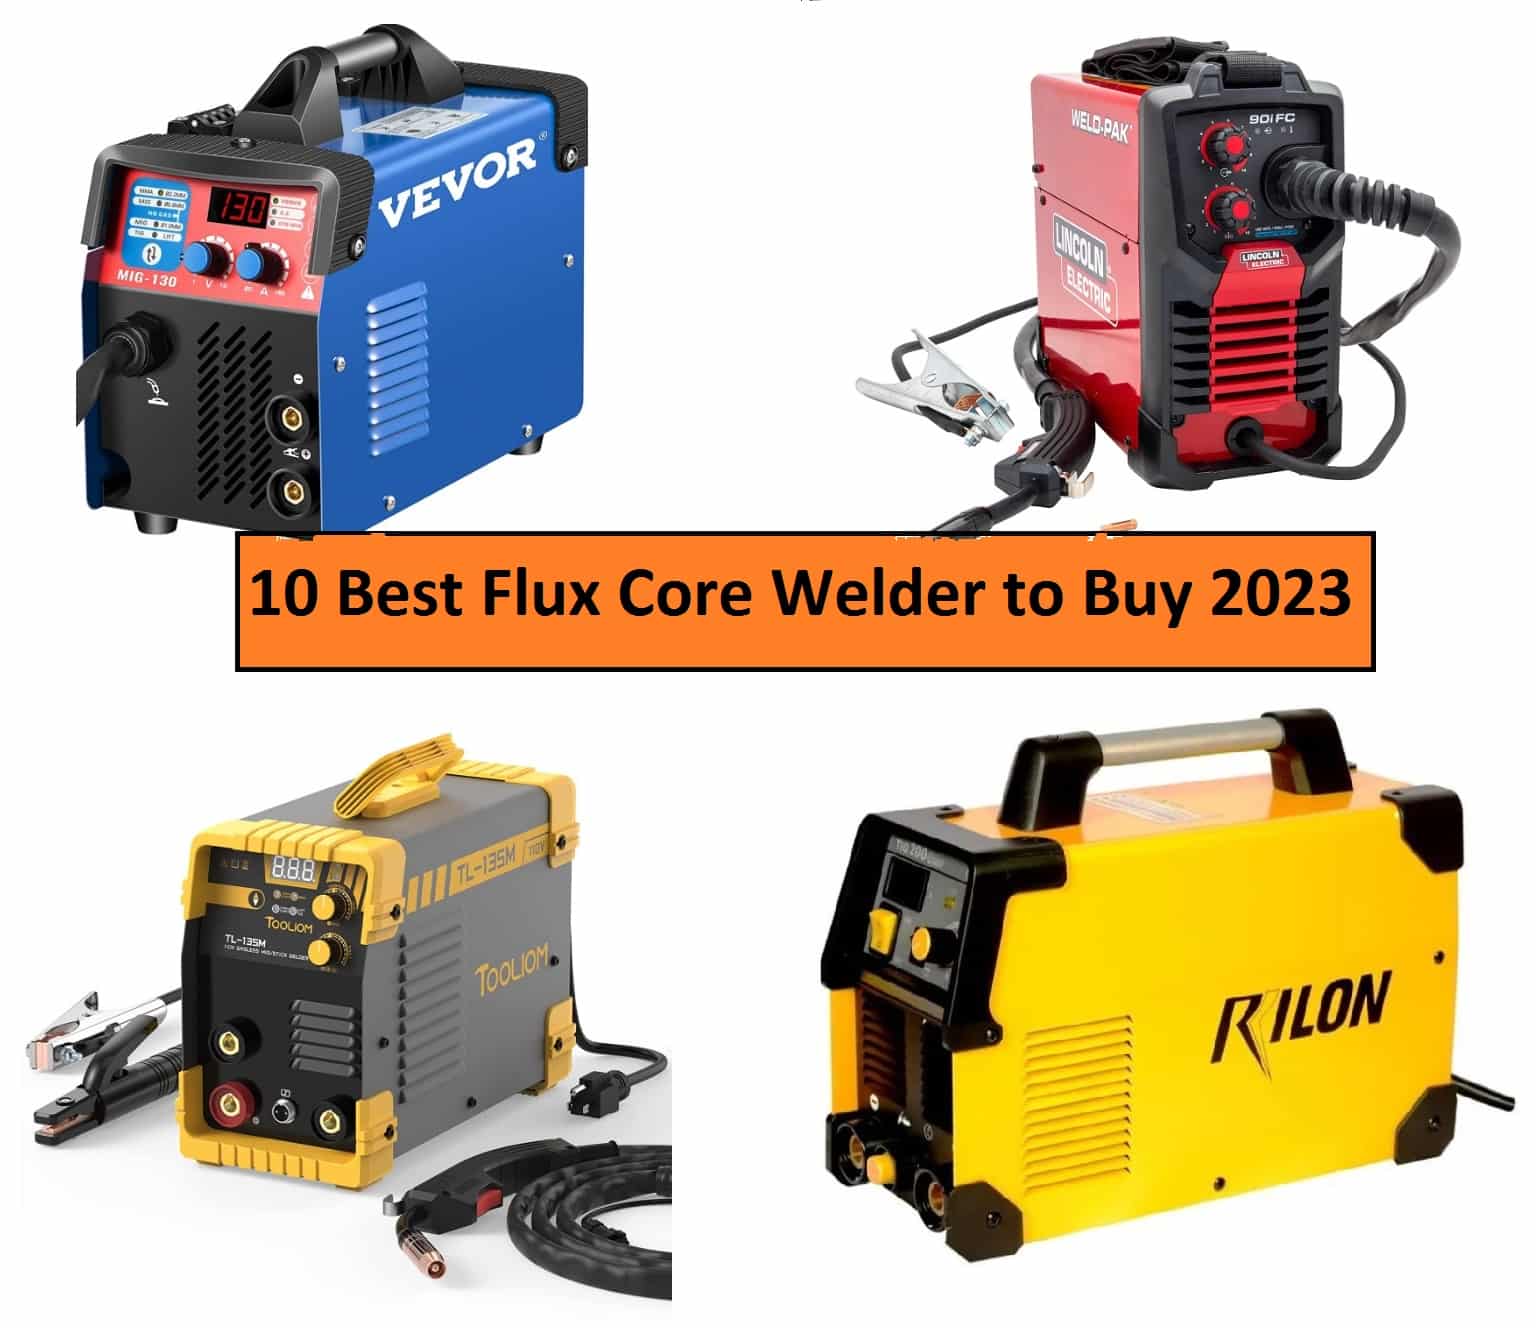 10 Best Flux Core Welder to Buy in 2023